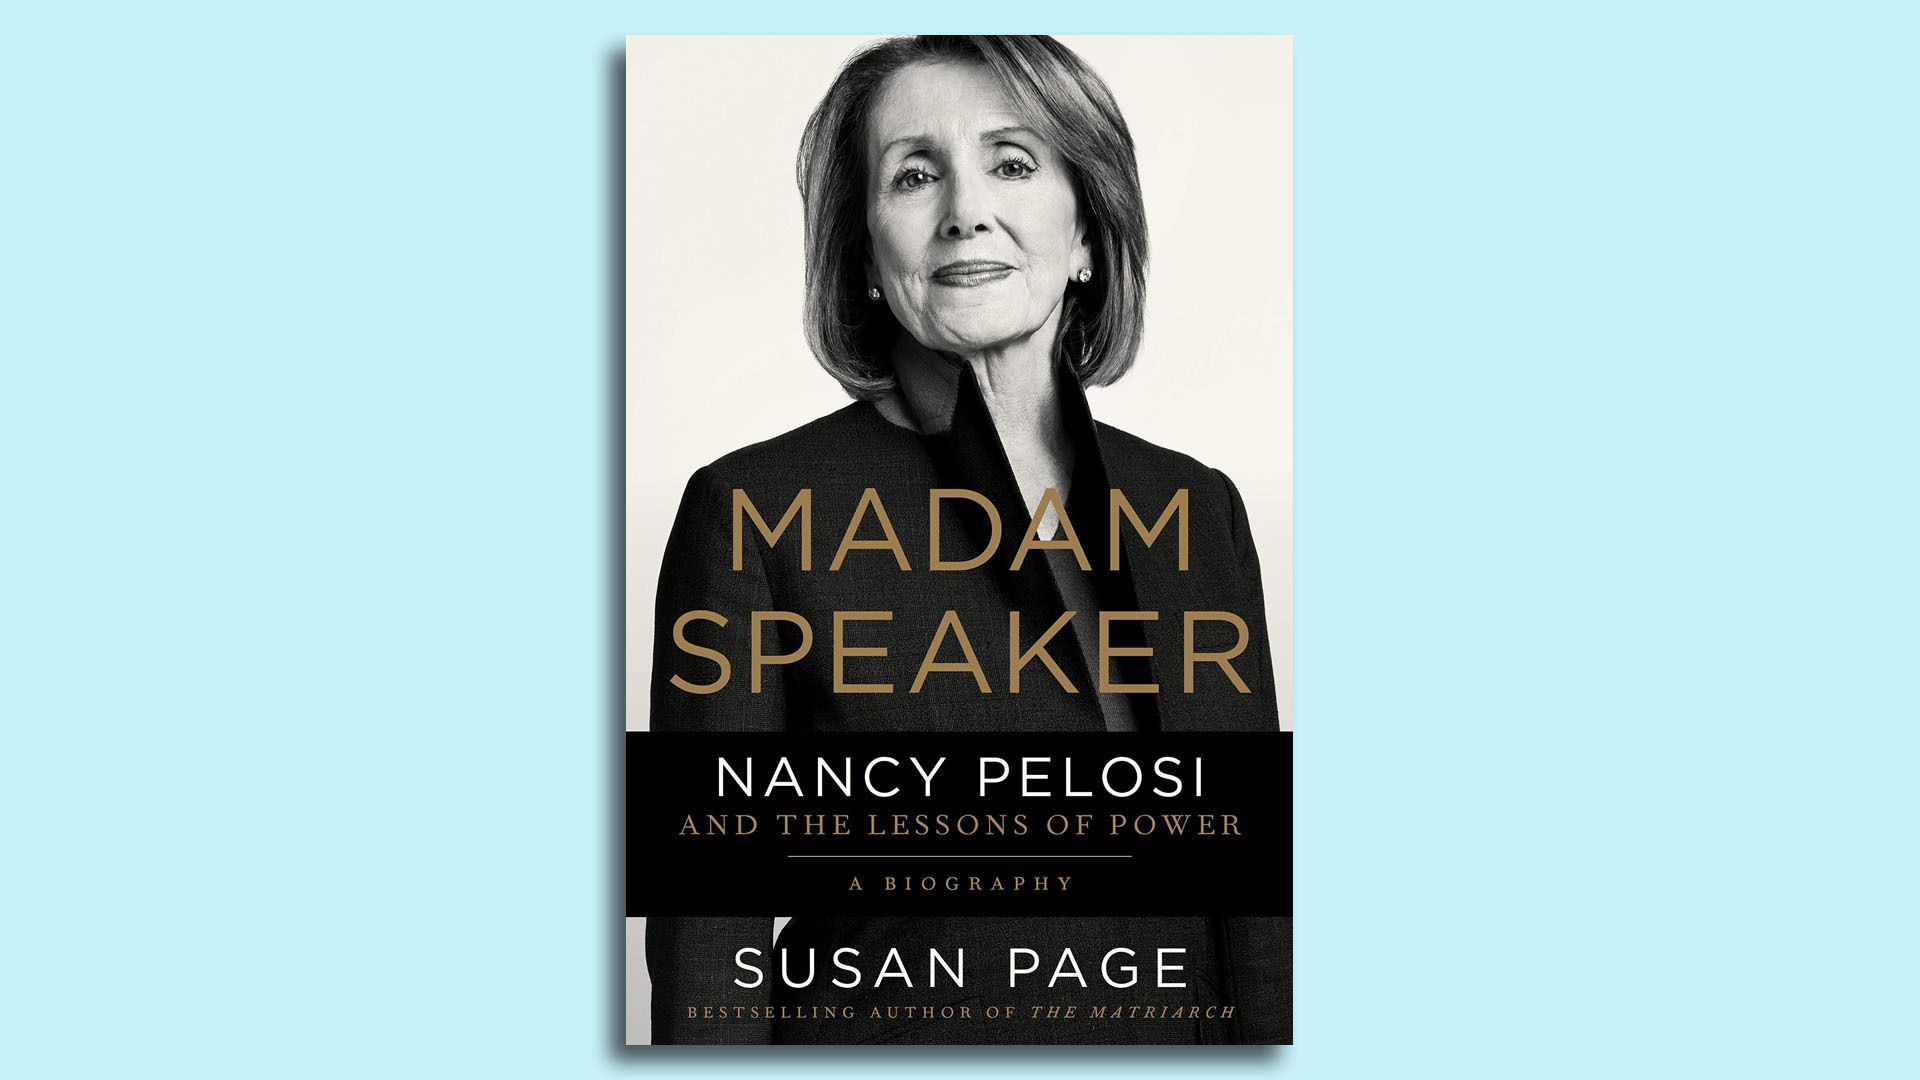 Nancy Pelosi book